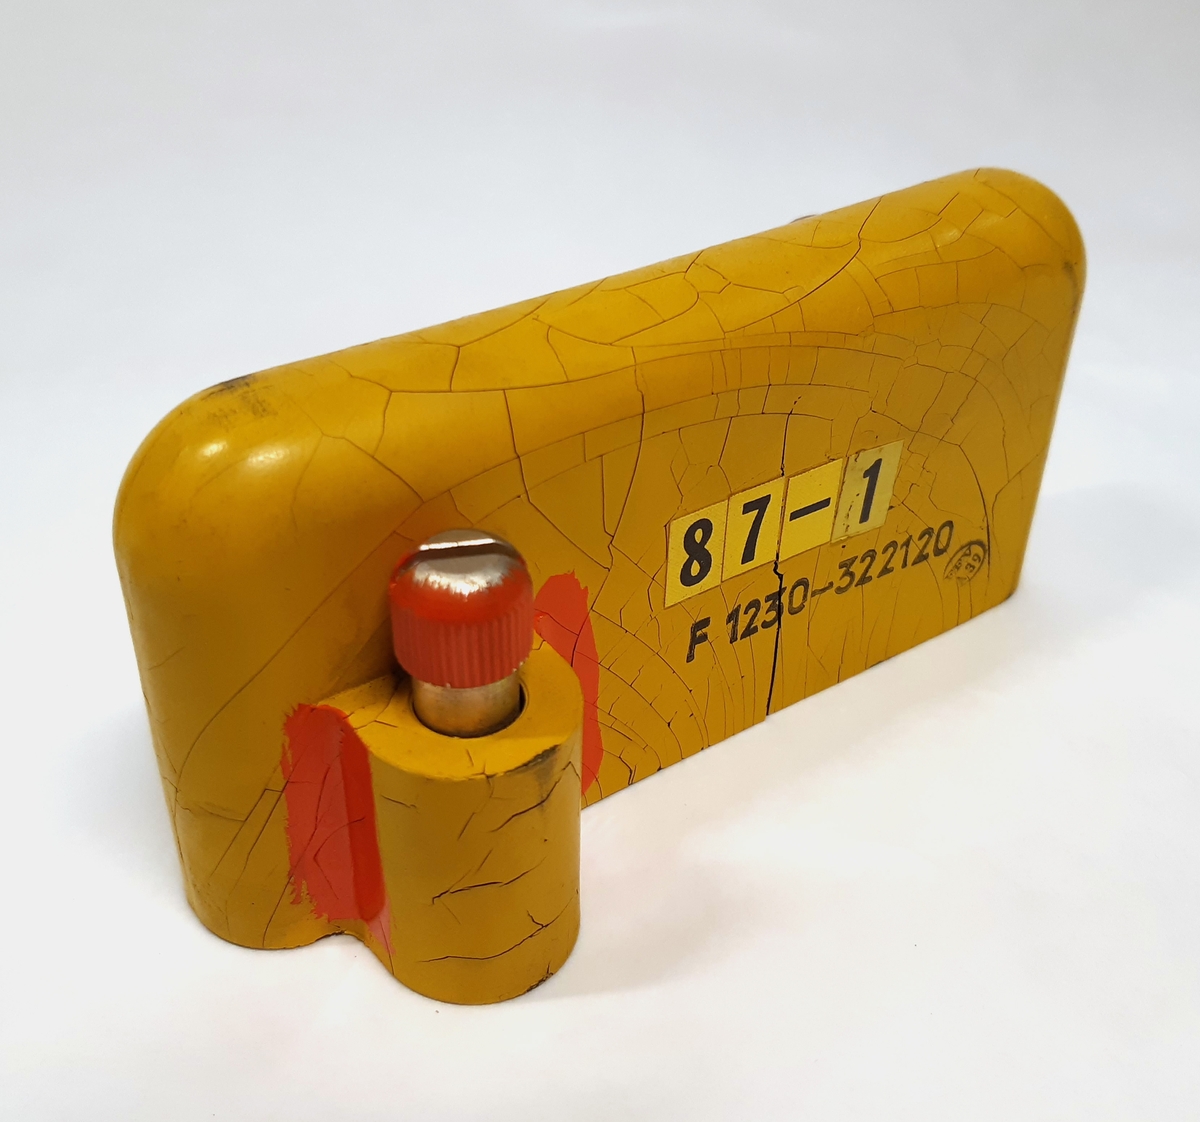 Antennskydd PN 797, i svart gummi och med gulmålad utsida. Vid vardera ände sitter en skruv. Etikett-märkt "87-1".